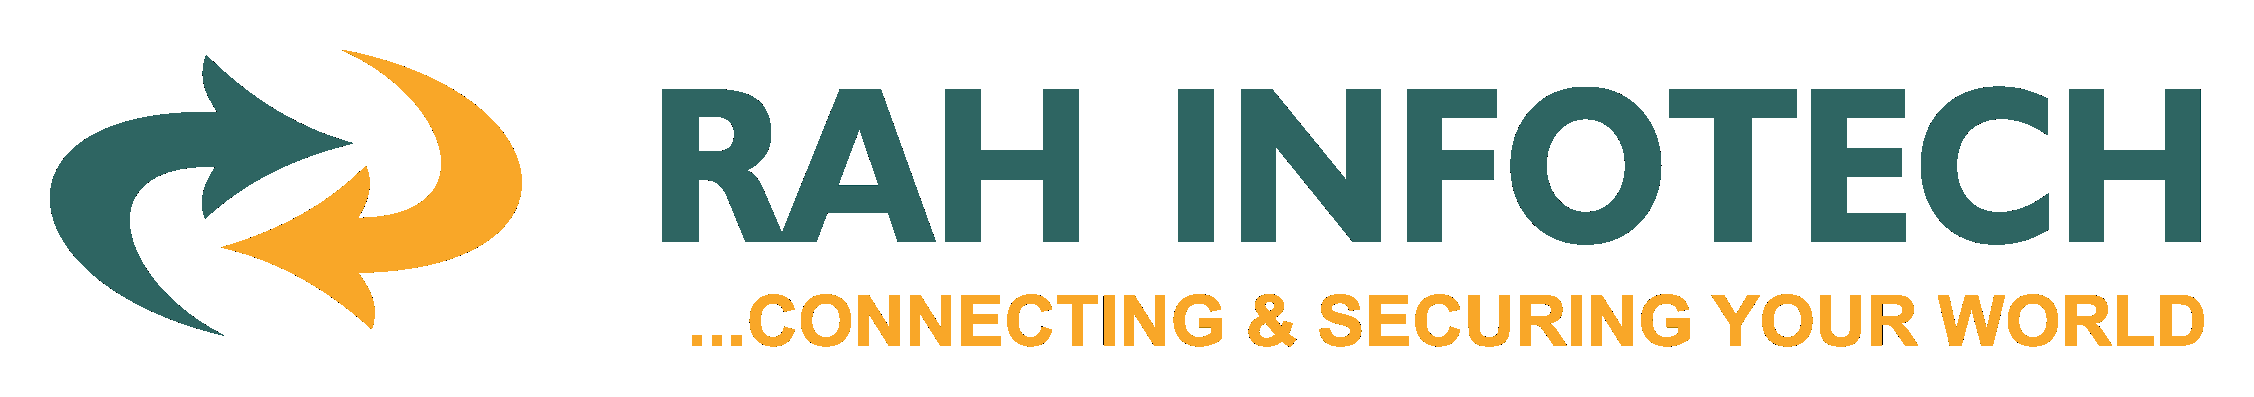 RAH Infotech logo